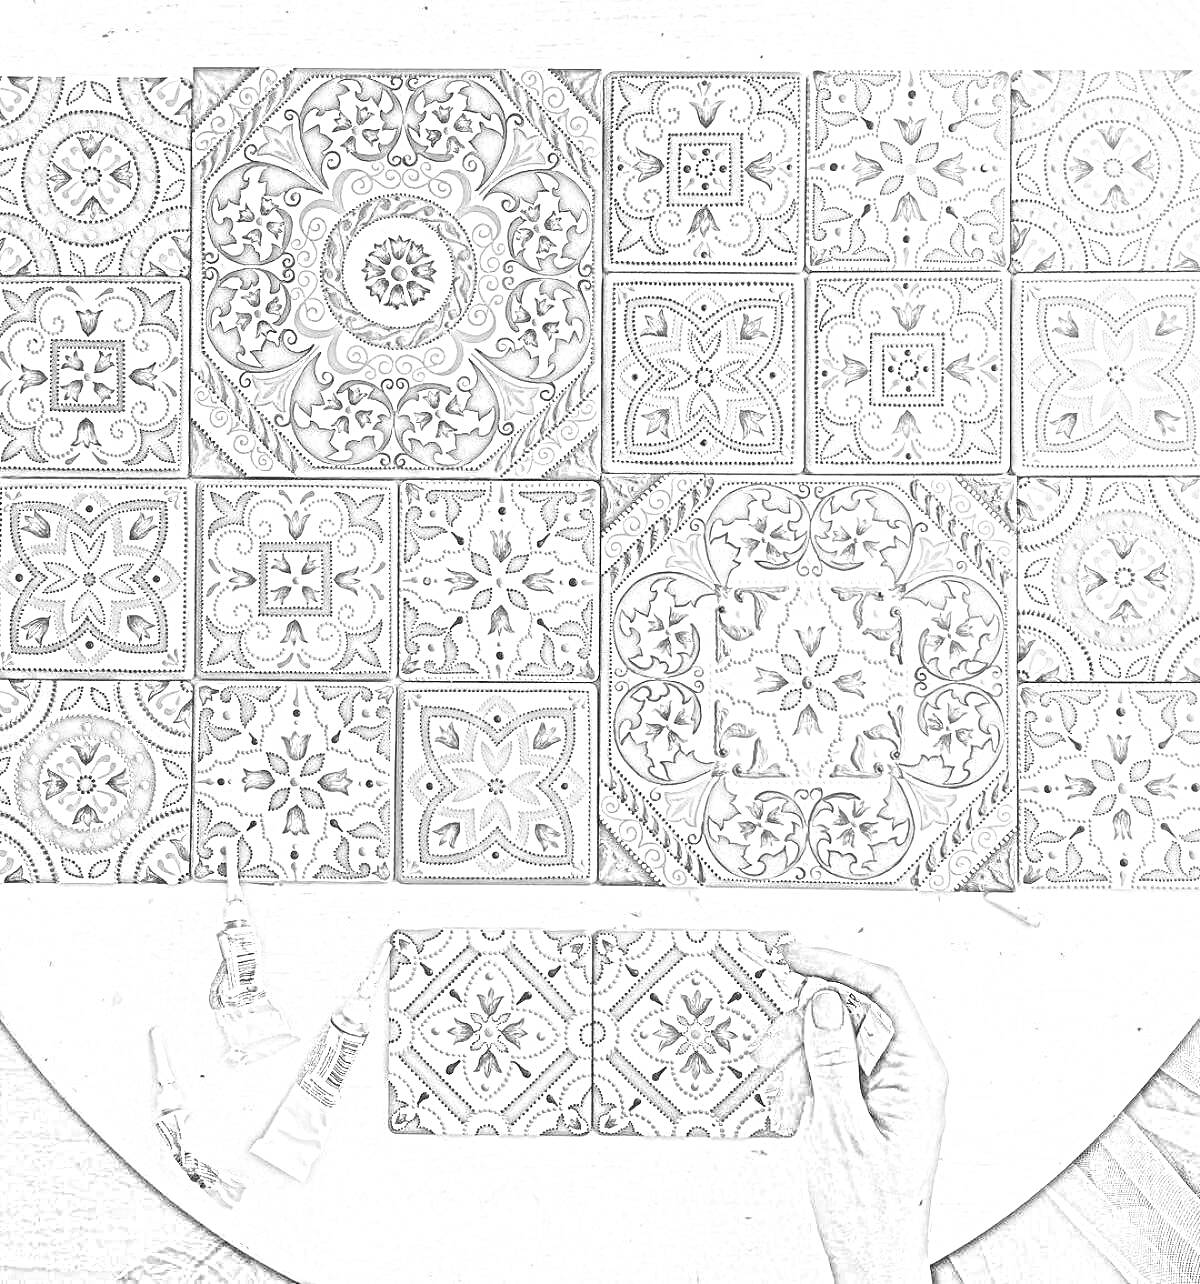 декоративные керамические плитки с цветочными и геометрическими узорами, палитра красок, рука человека